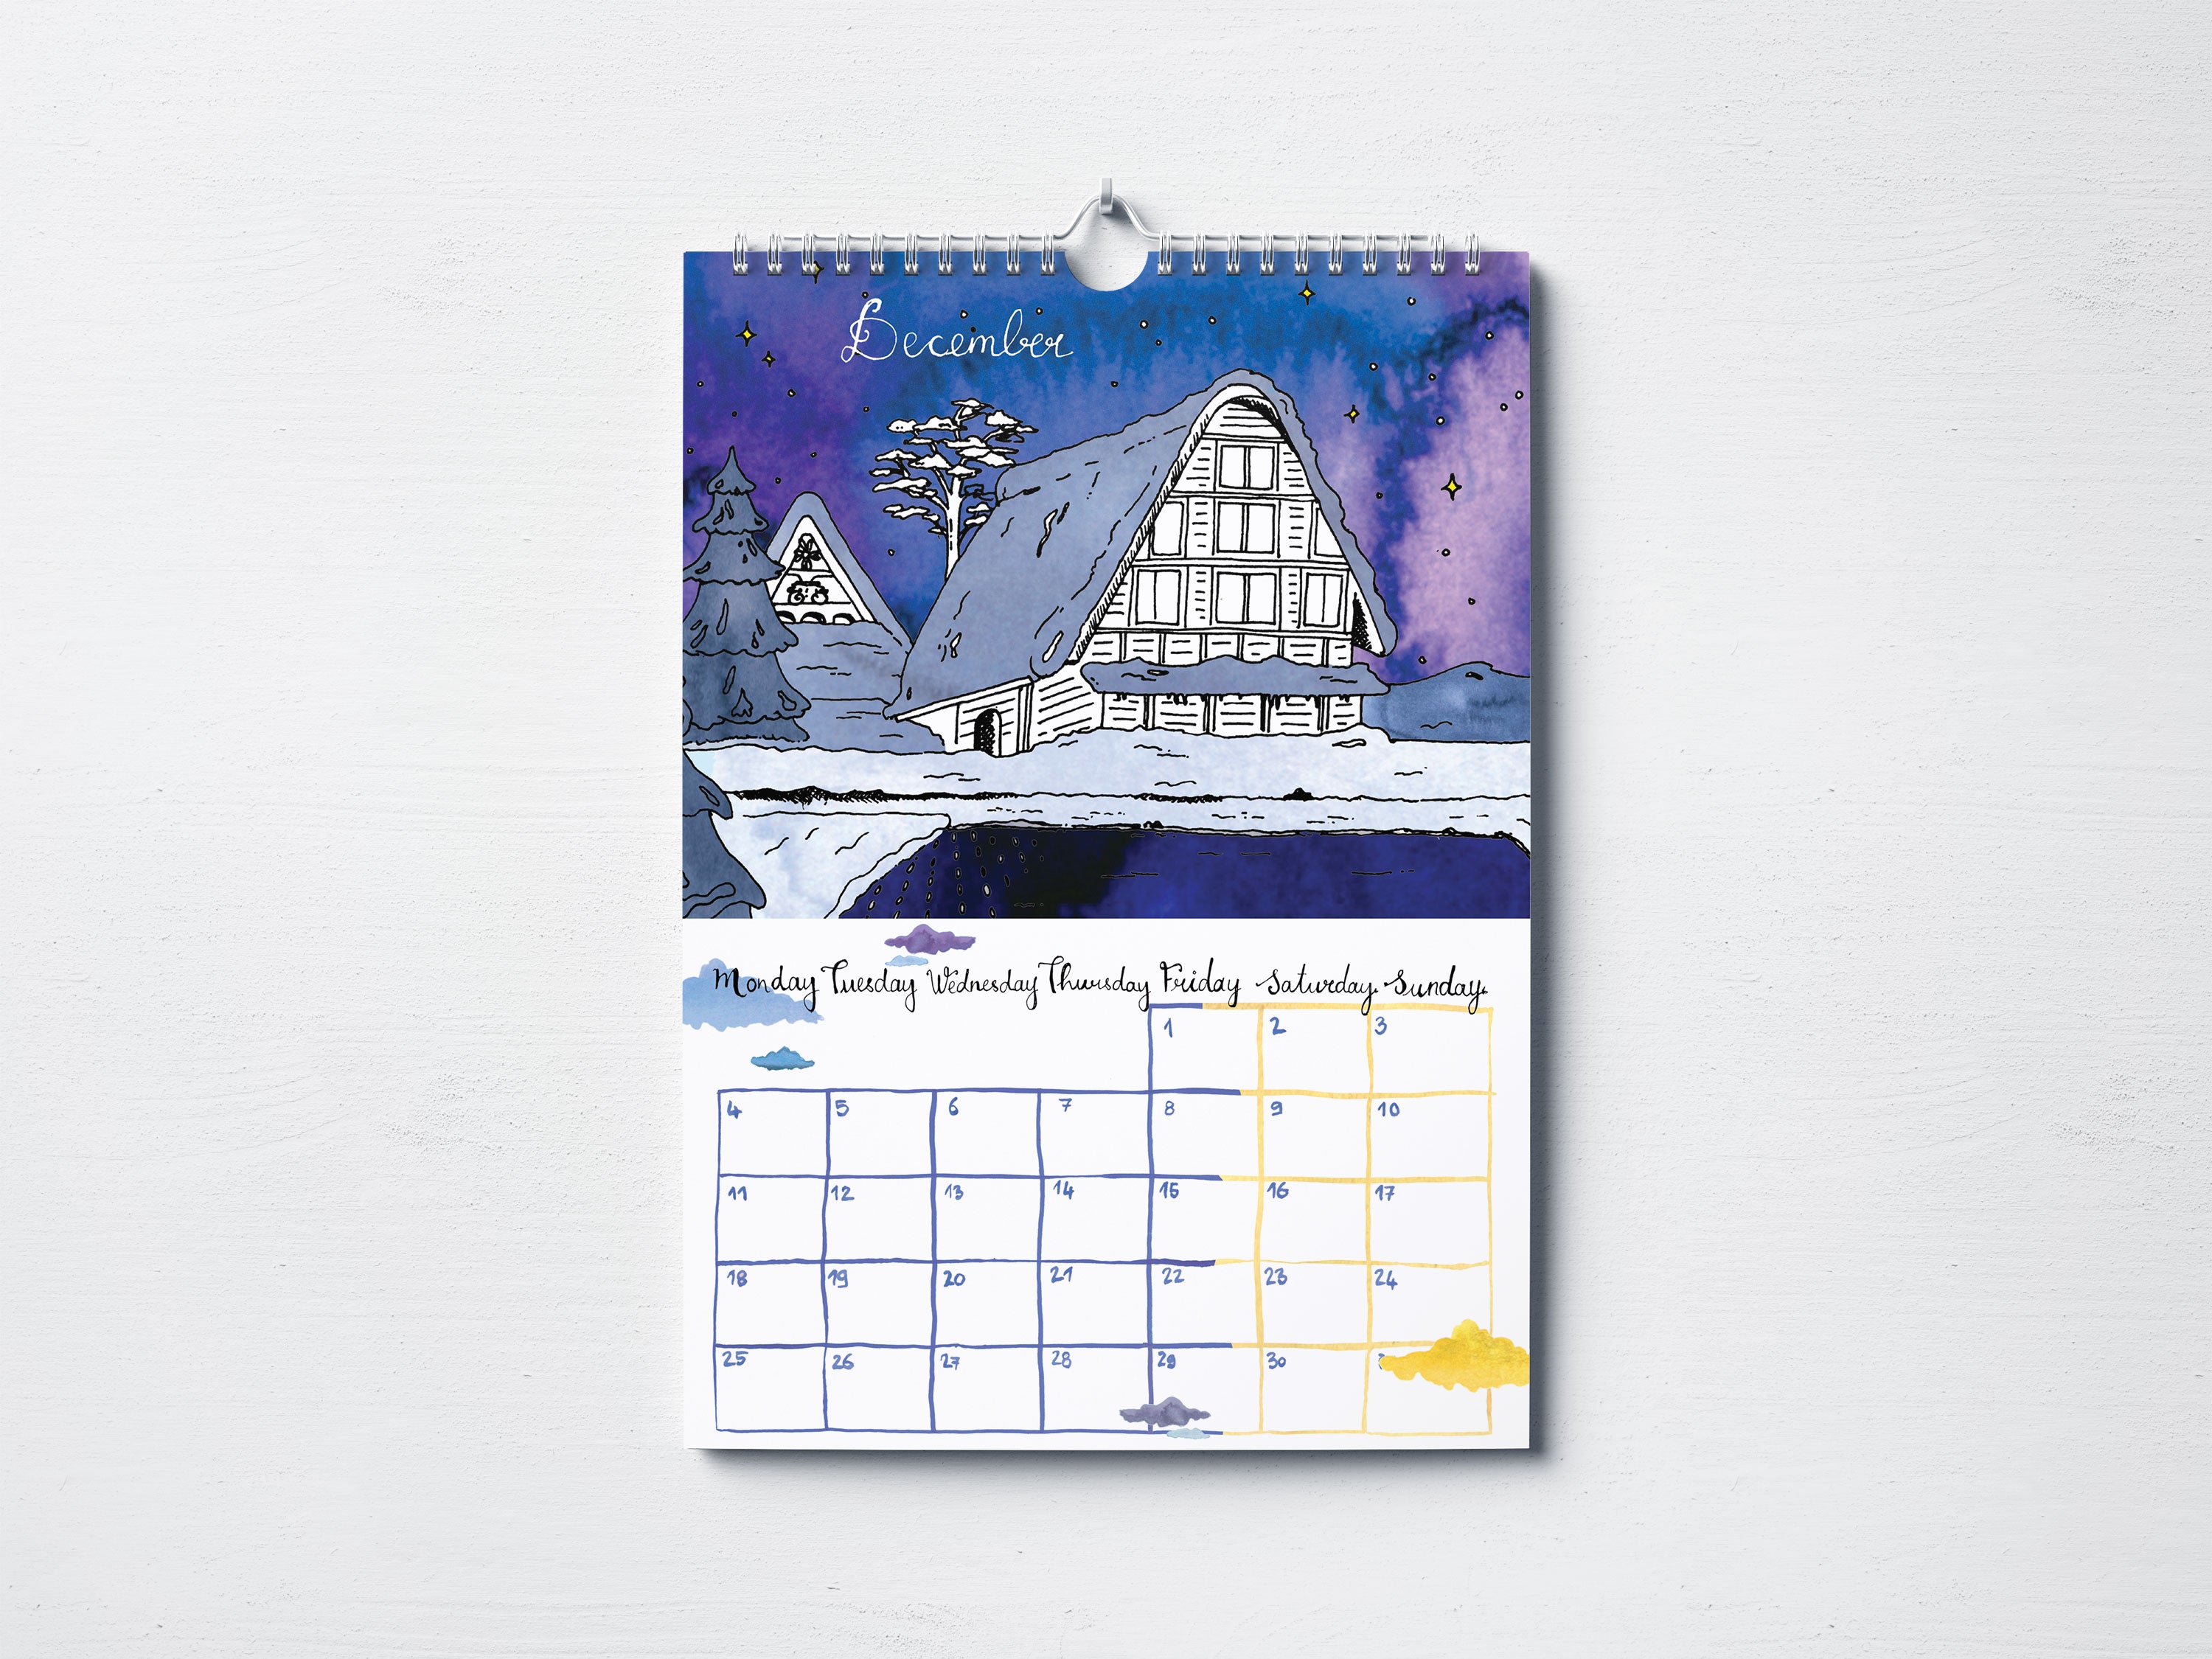 Wall Calendar A3 - Japan Edition